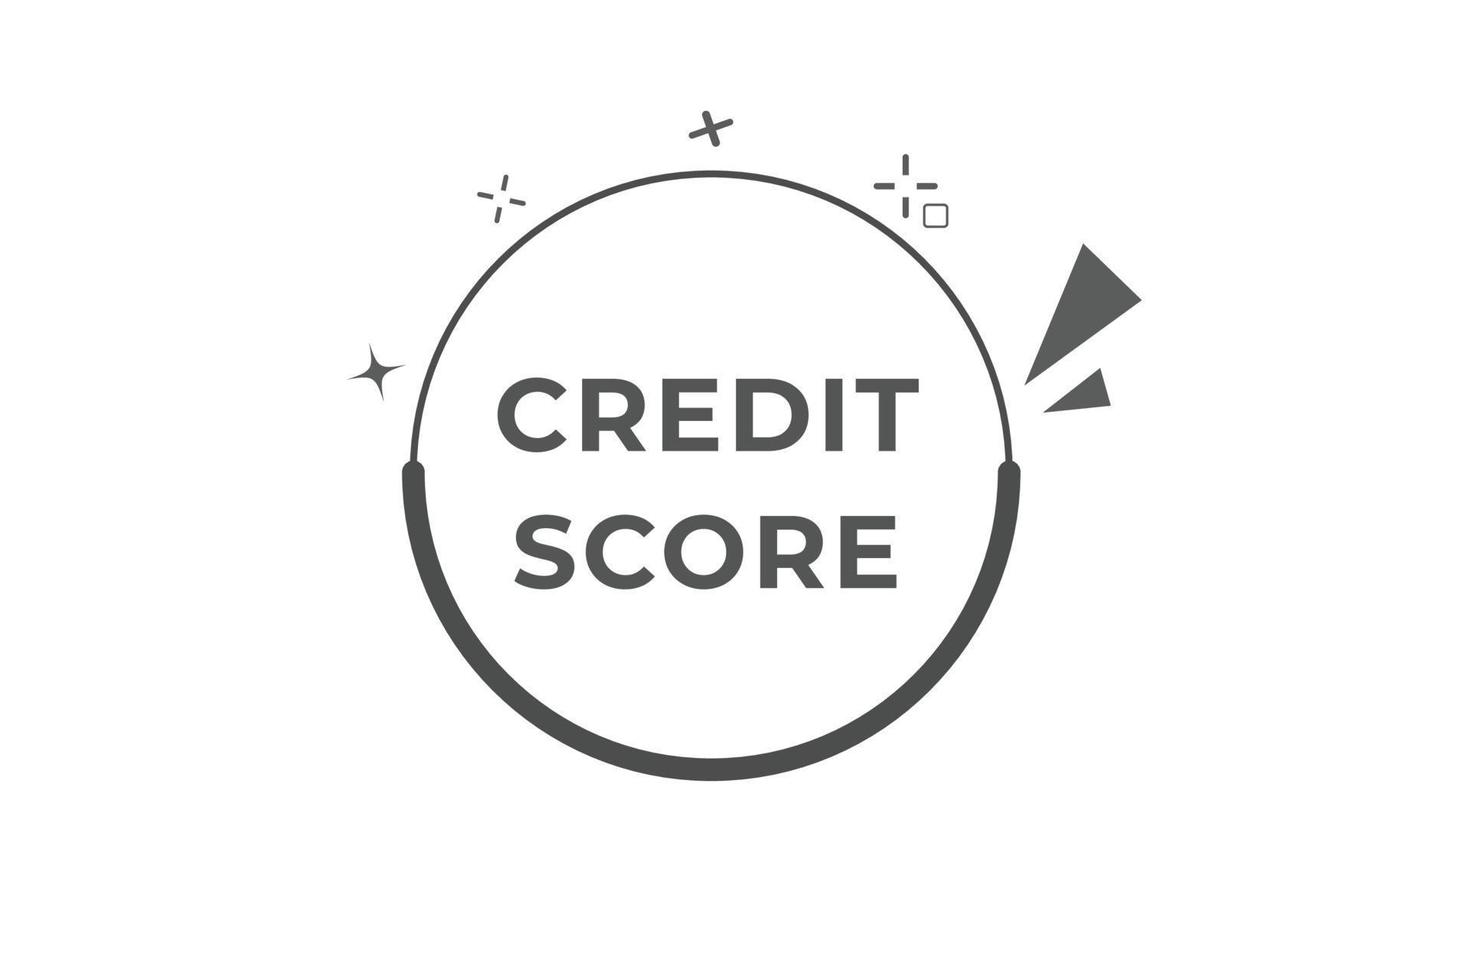 Credit Score Button. Speech Bubble, Banner Label Credit Score vector